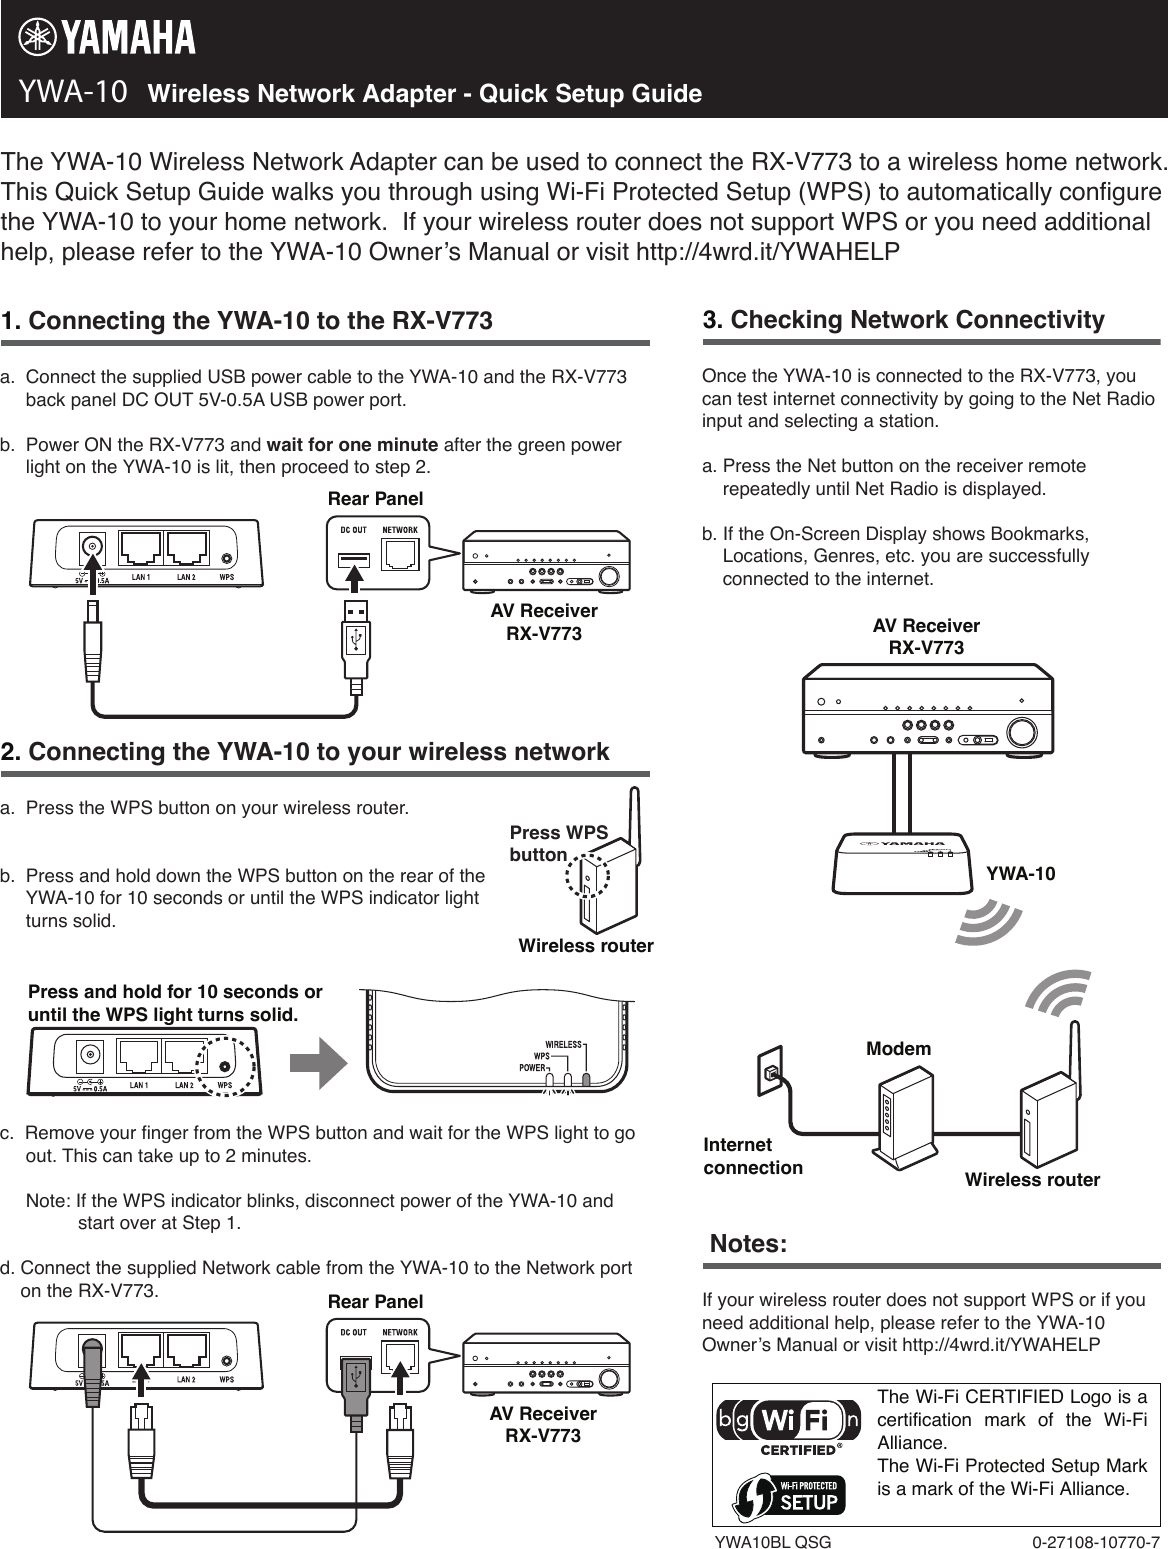 Page 1 of 1 - Yamaha YWA-10_QSG YWA-10 Wireless Network Adapter Quick Setup Guide